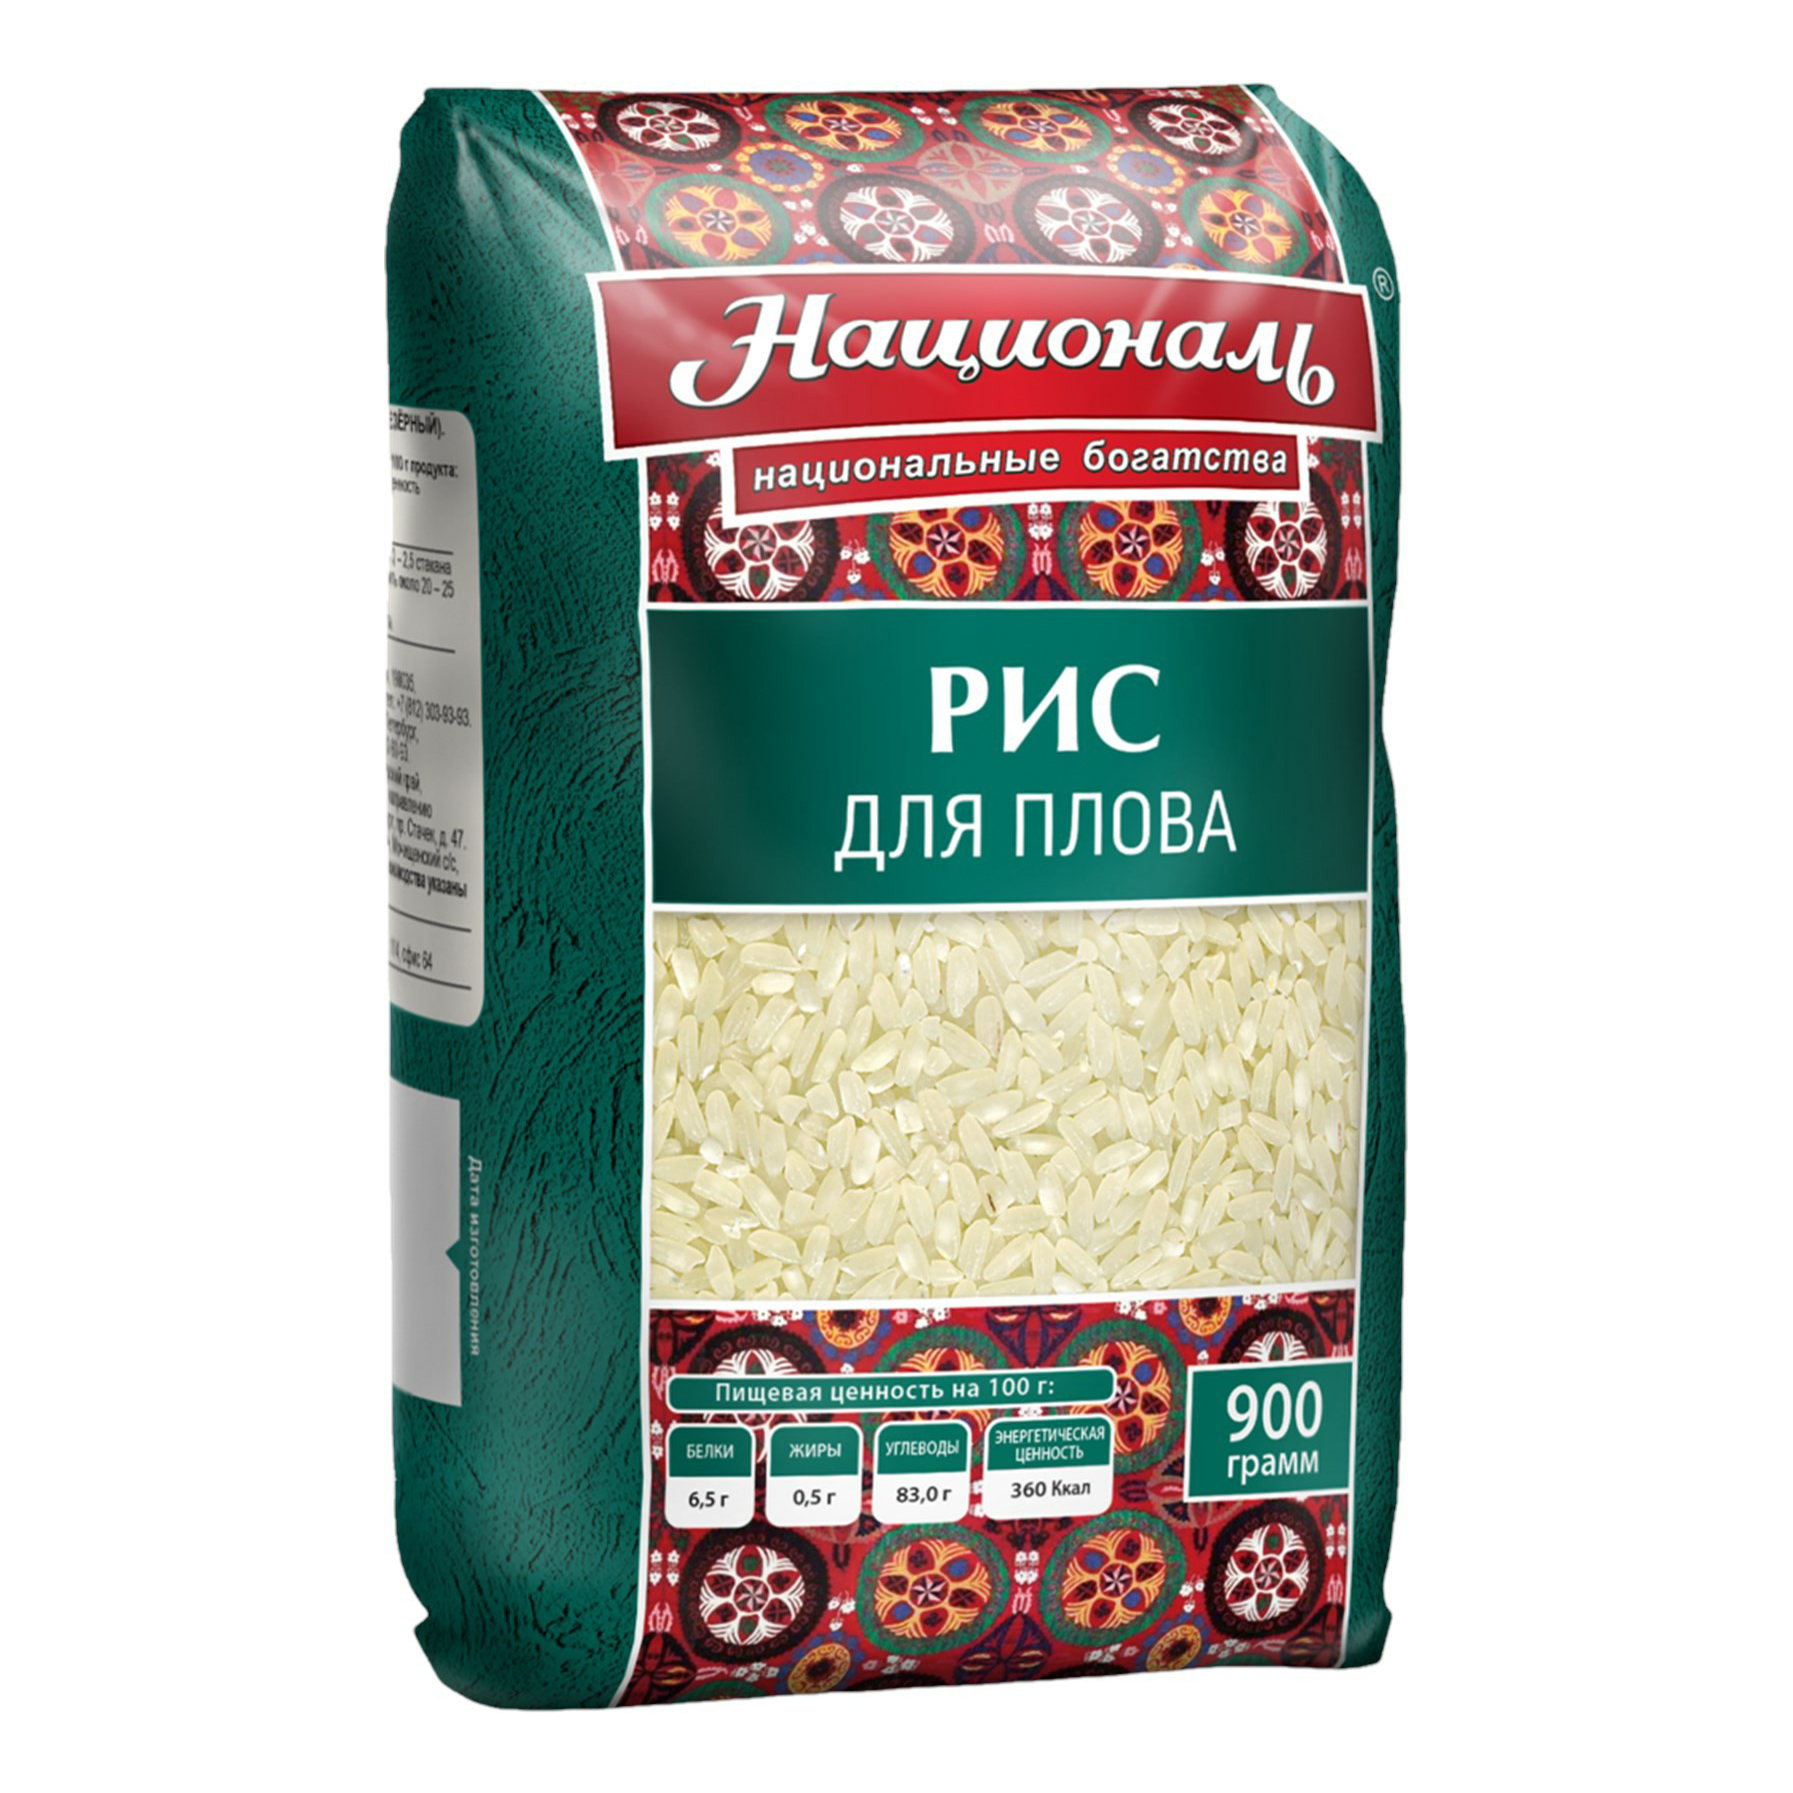 Купить рис Националь Для плова среднезерный шлифованный 900 г, цены на Мегамаркет | Артикул: 100030324387